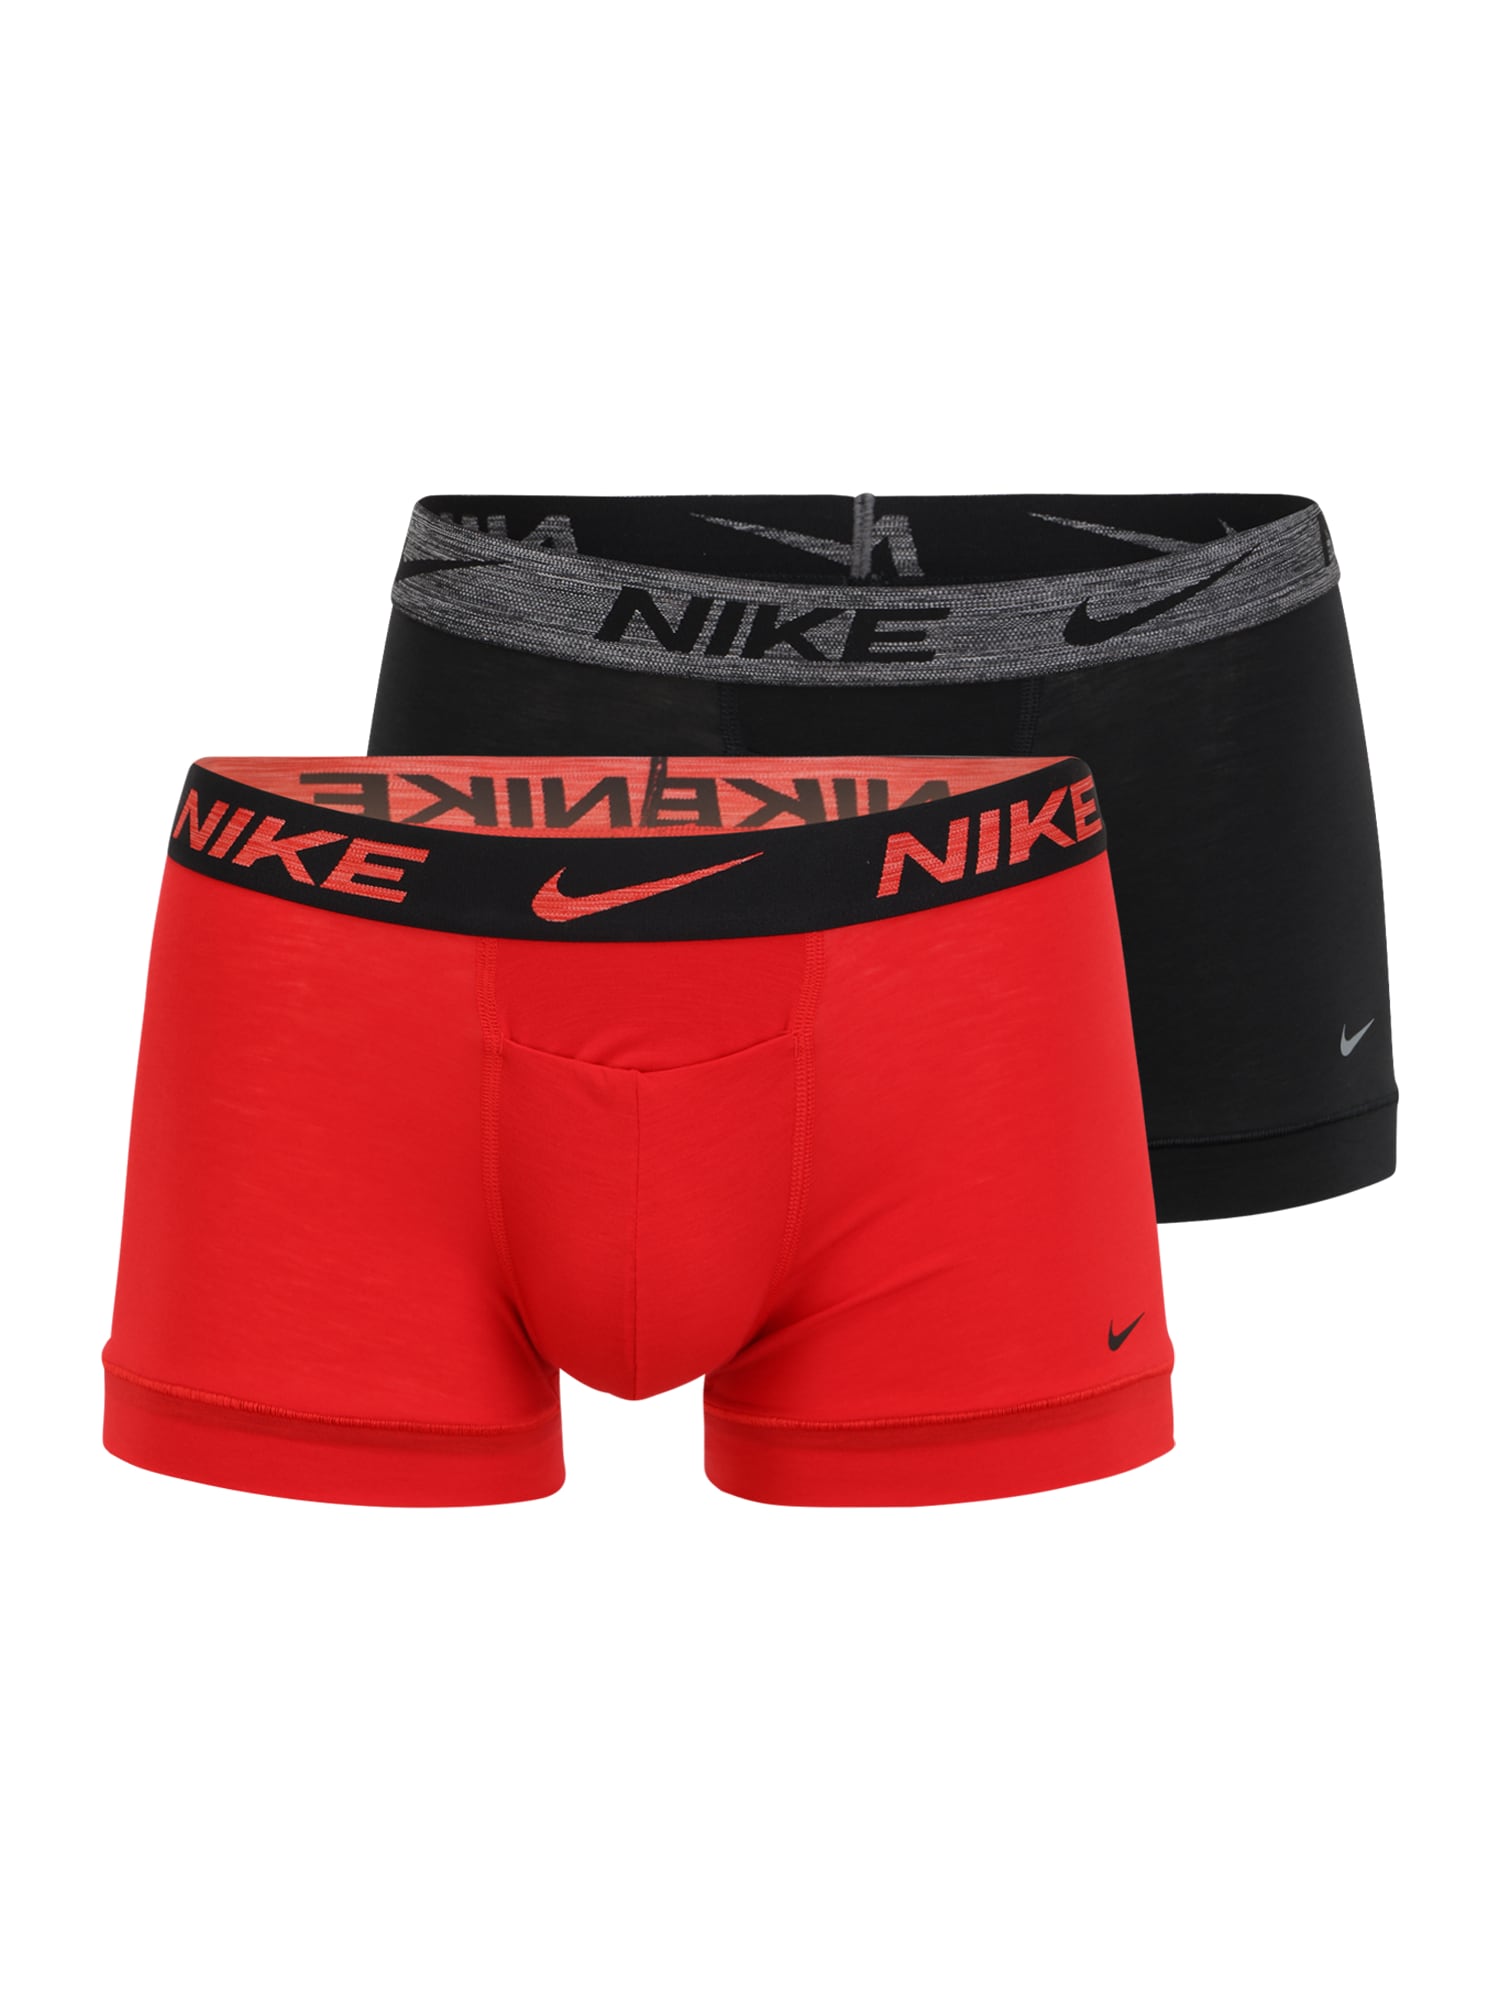 NIKE Sport alsónadrágok  piros / fekete / szürke melír